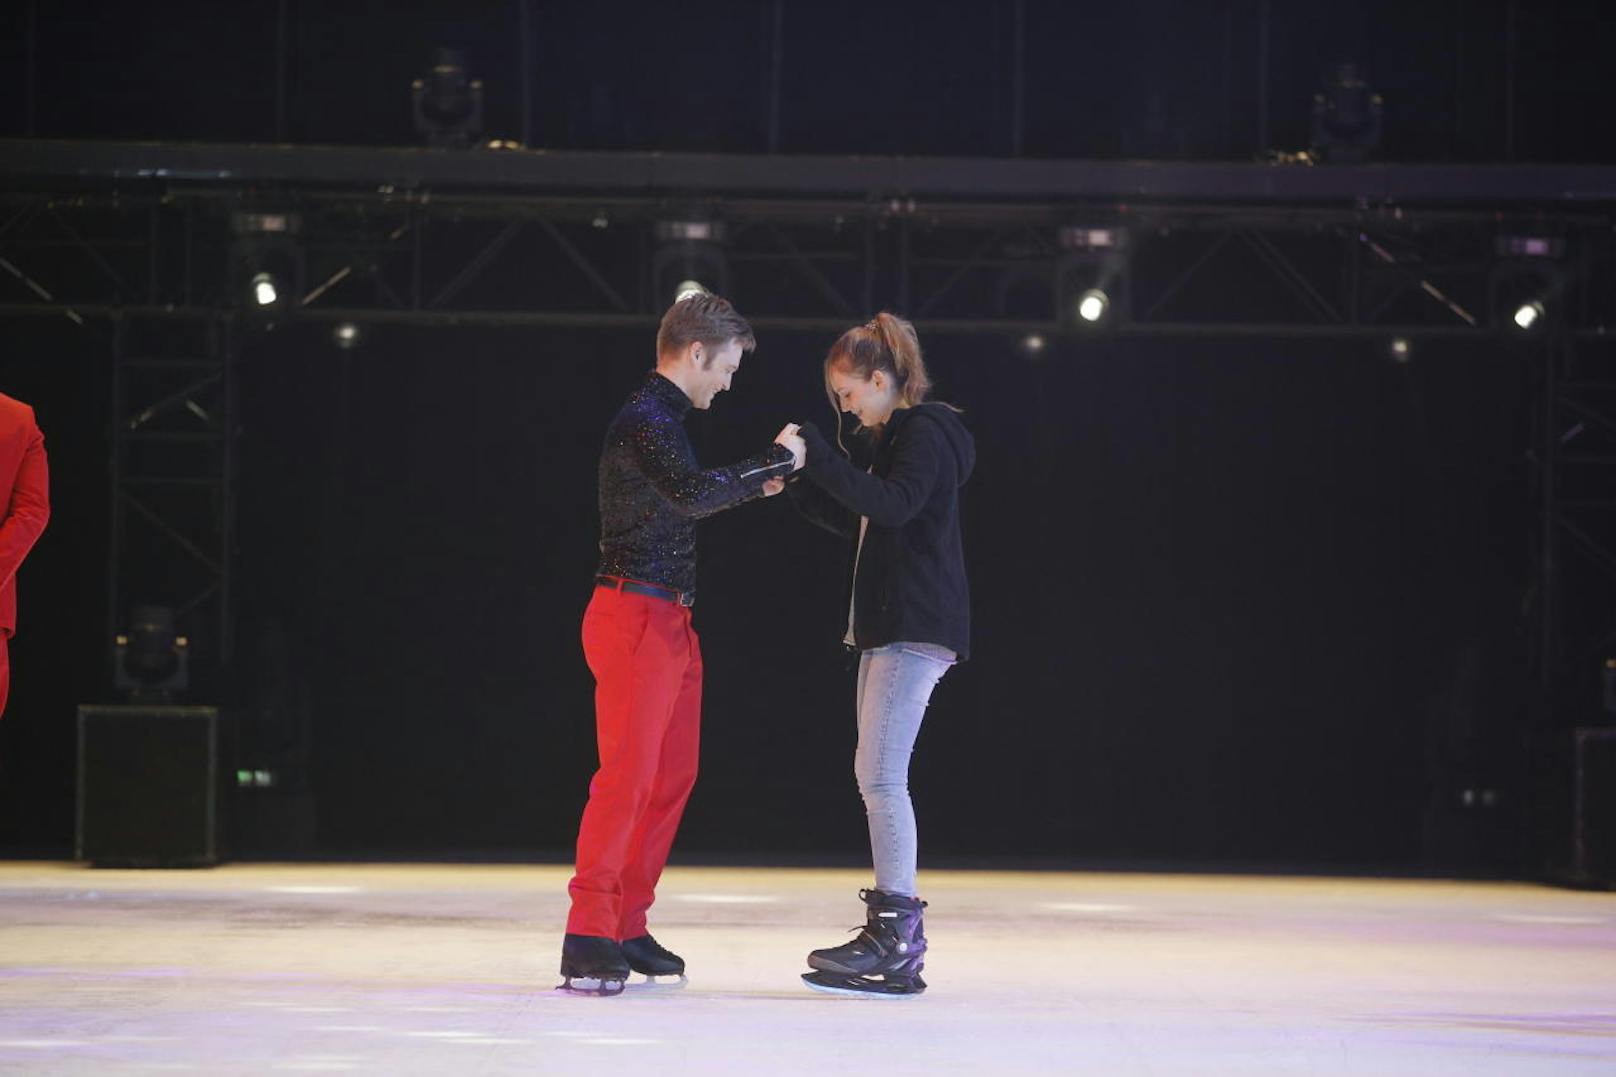 40 glückliche "Meet & Skate"-Gewinner flitzten im Jänner 2018 mit den Showstars von "Holiday on Ice" über die spiegelglatte Bühne in der Stadthalle (Wien-Fünfhaus).